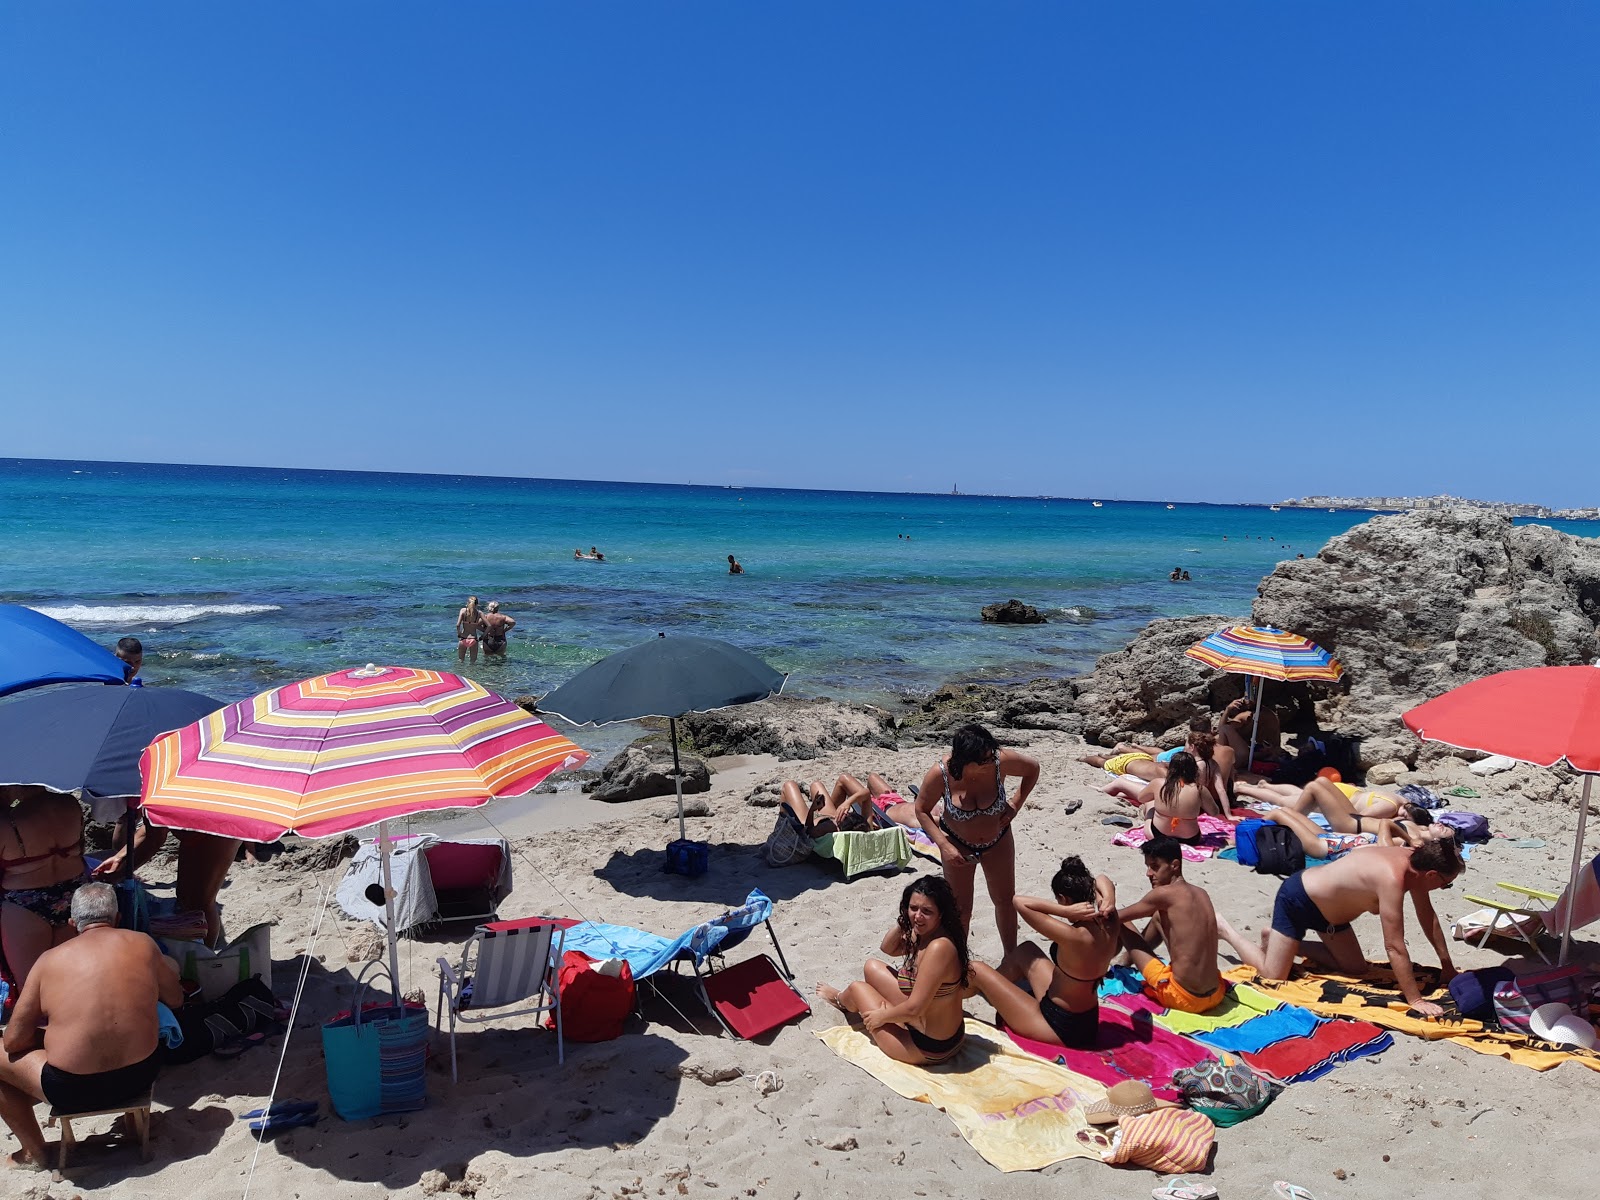 Spiaggia Gallipoli'in fotoğrafı kısmen temiz temizlik seviyesi ile